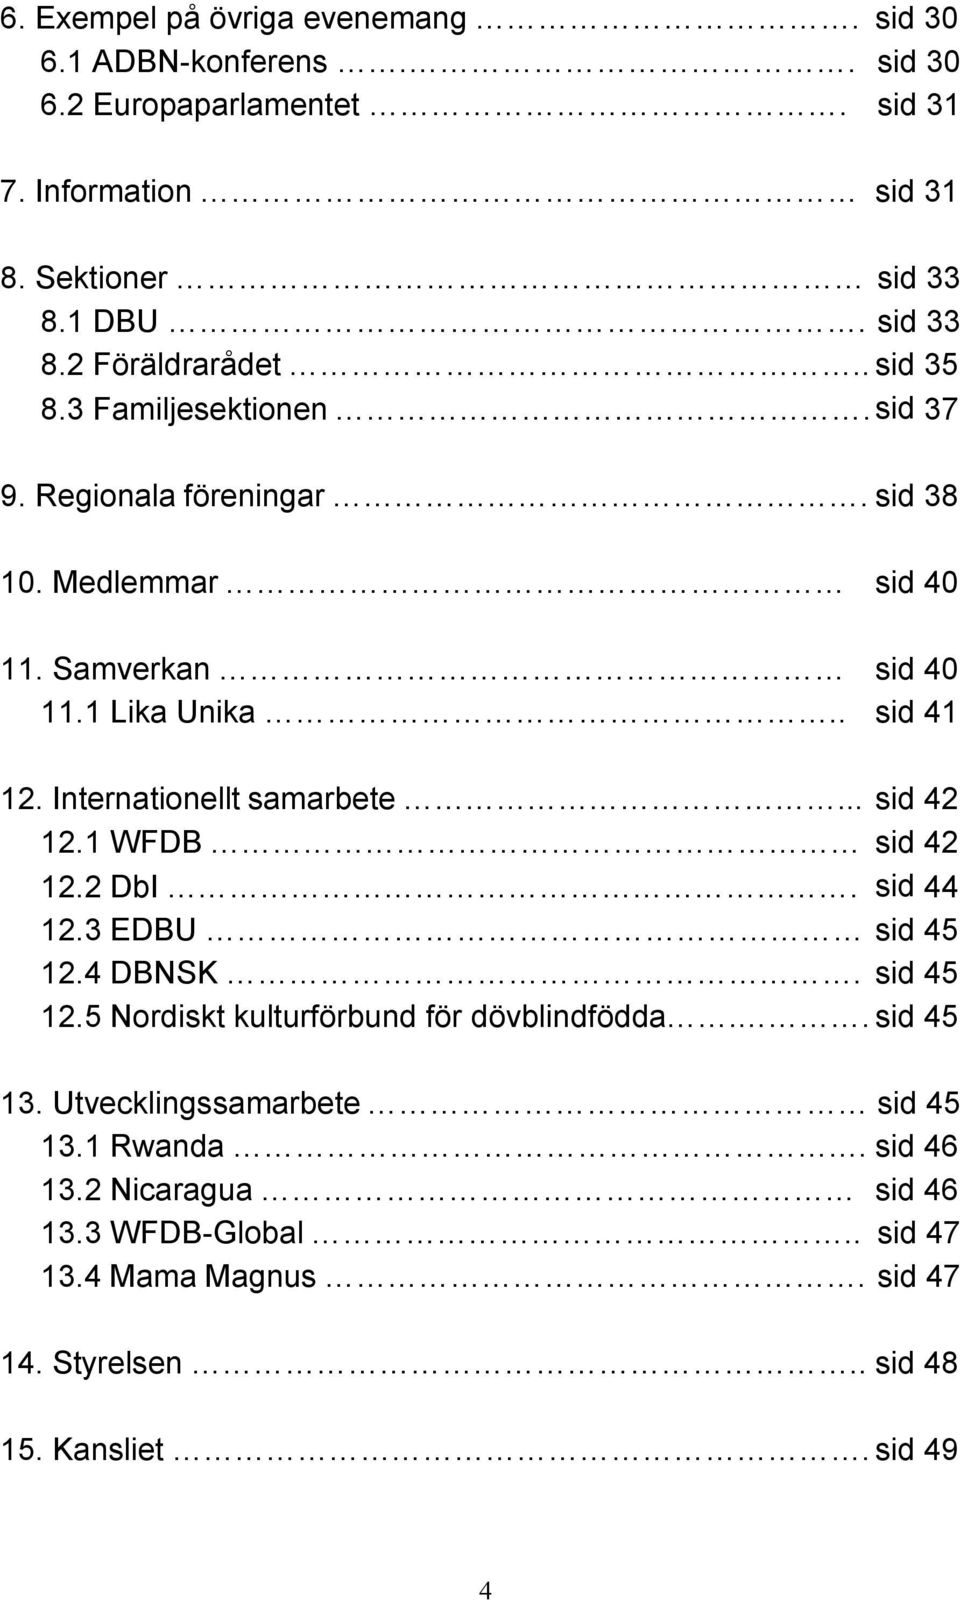 Internationellt samarbete... sid 42 12.1 WFDB sid 42 12.2 DbI. sid 44 12.3 EDBU sid 45 12.4 DBNSK. sid 45 12.5 Nordiskt kulturförbund för dövblindfödda.